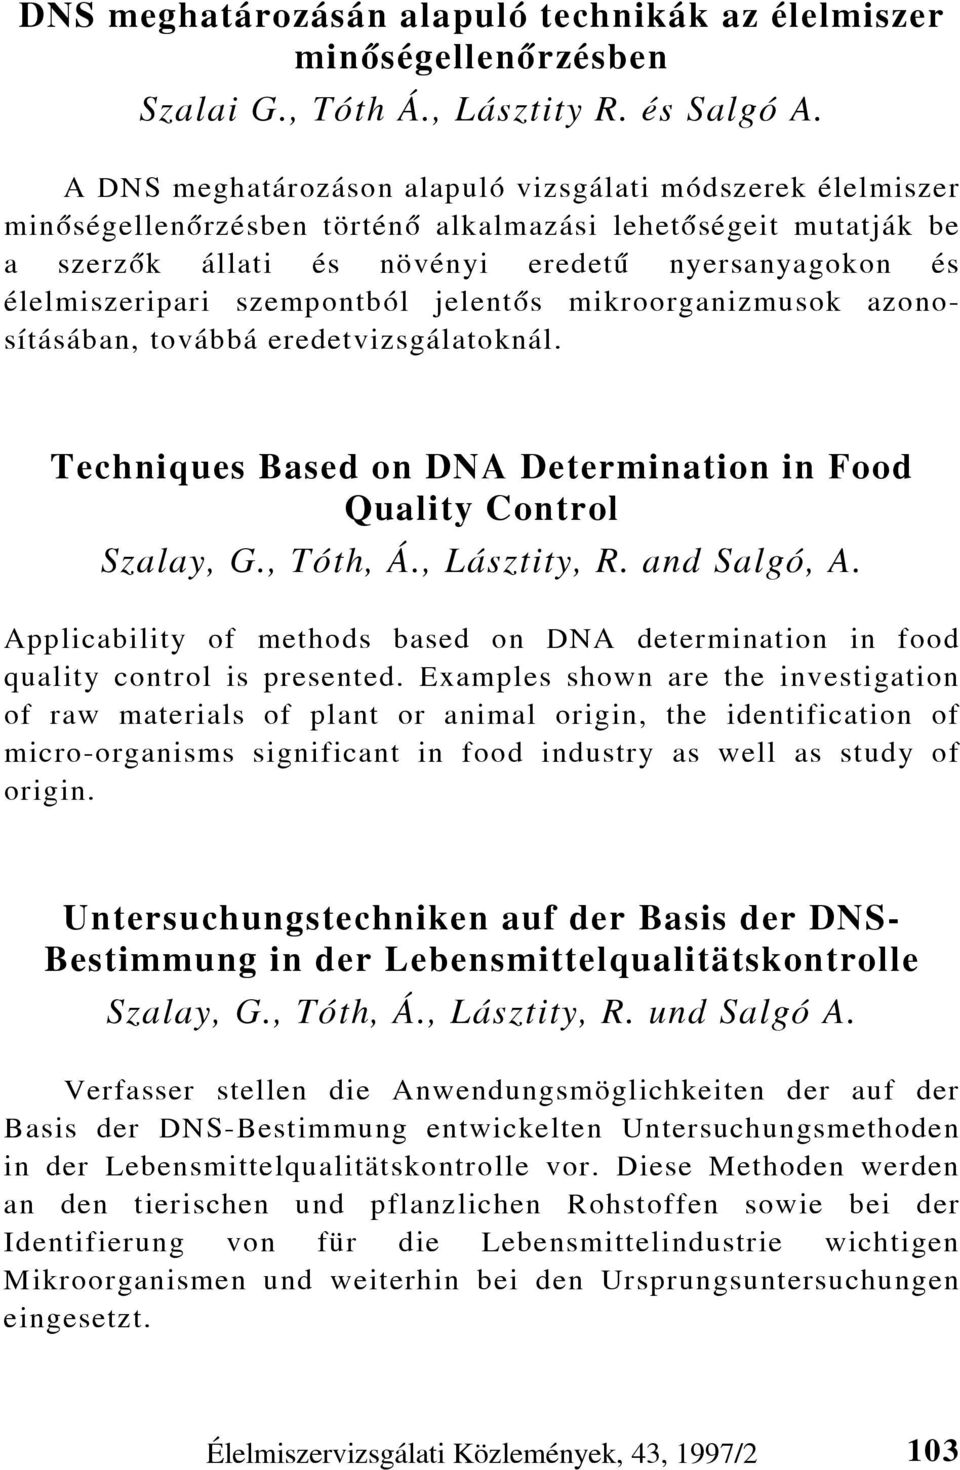 szempontból jelentõs mikroorganizmusok azonosításában, továbbá eredetvizsgálatoknál. Techniques Based on DNA Determination in Food Quality Control Szalay, G., Tóth, Á., Lásztity, R. and Salgó, A.